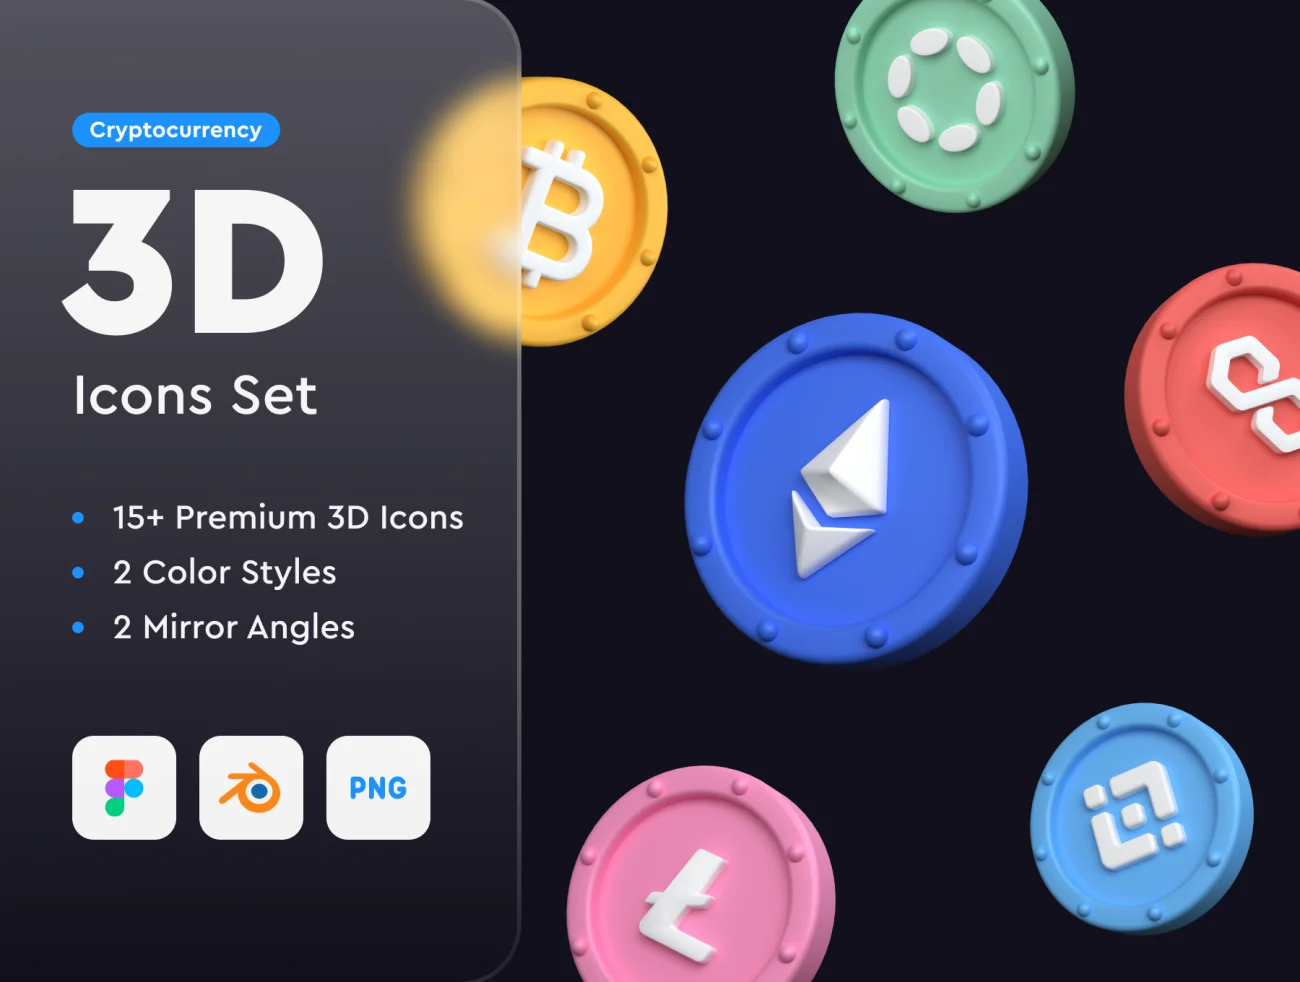 加密货币3D图标素材 Cryptocurrency 3D Icons Set sketch, blender, figma, lunacy格式-UI/UX、虚拟货币-到位啦UI